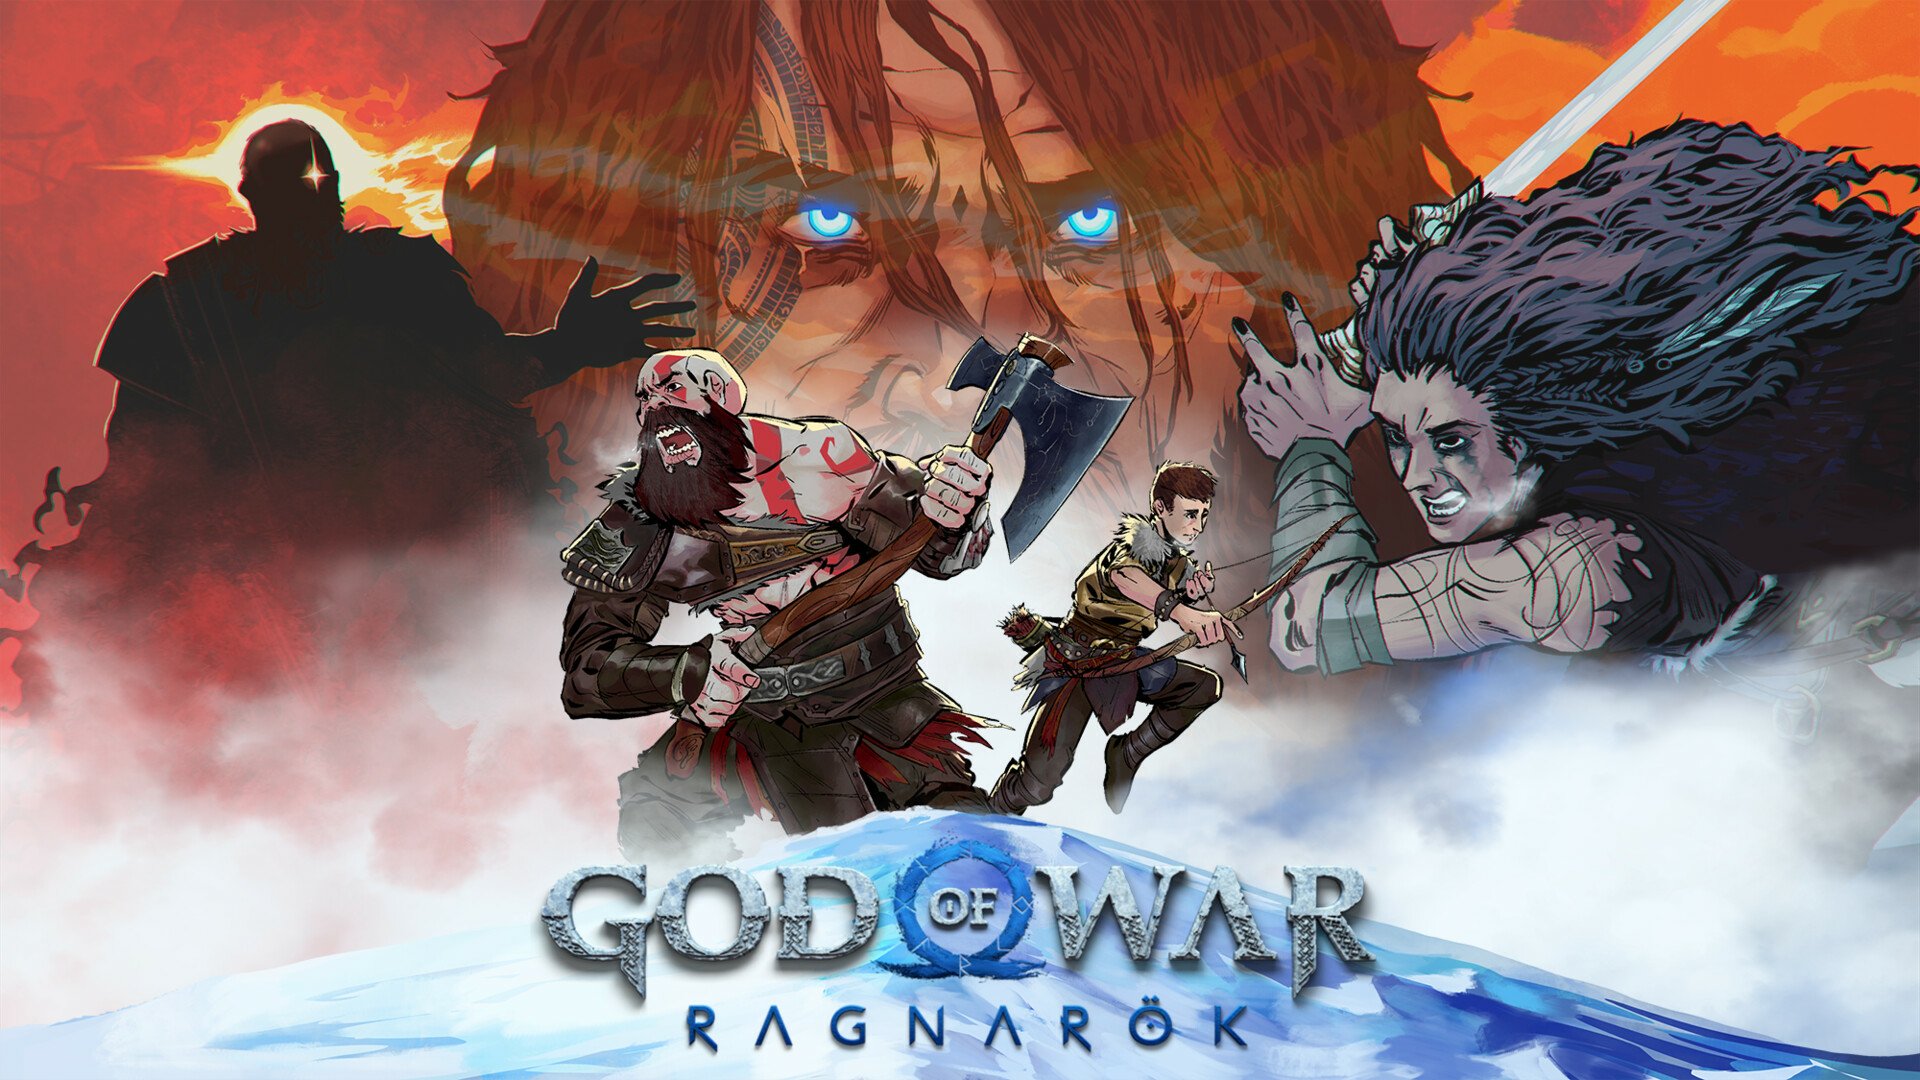 God of War: Ragnarök HD Wallpaper by Wallace Quaint